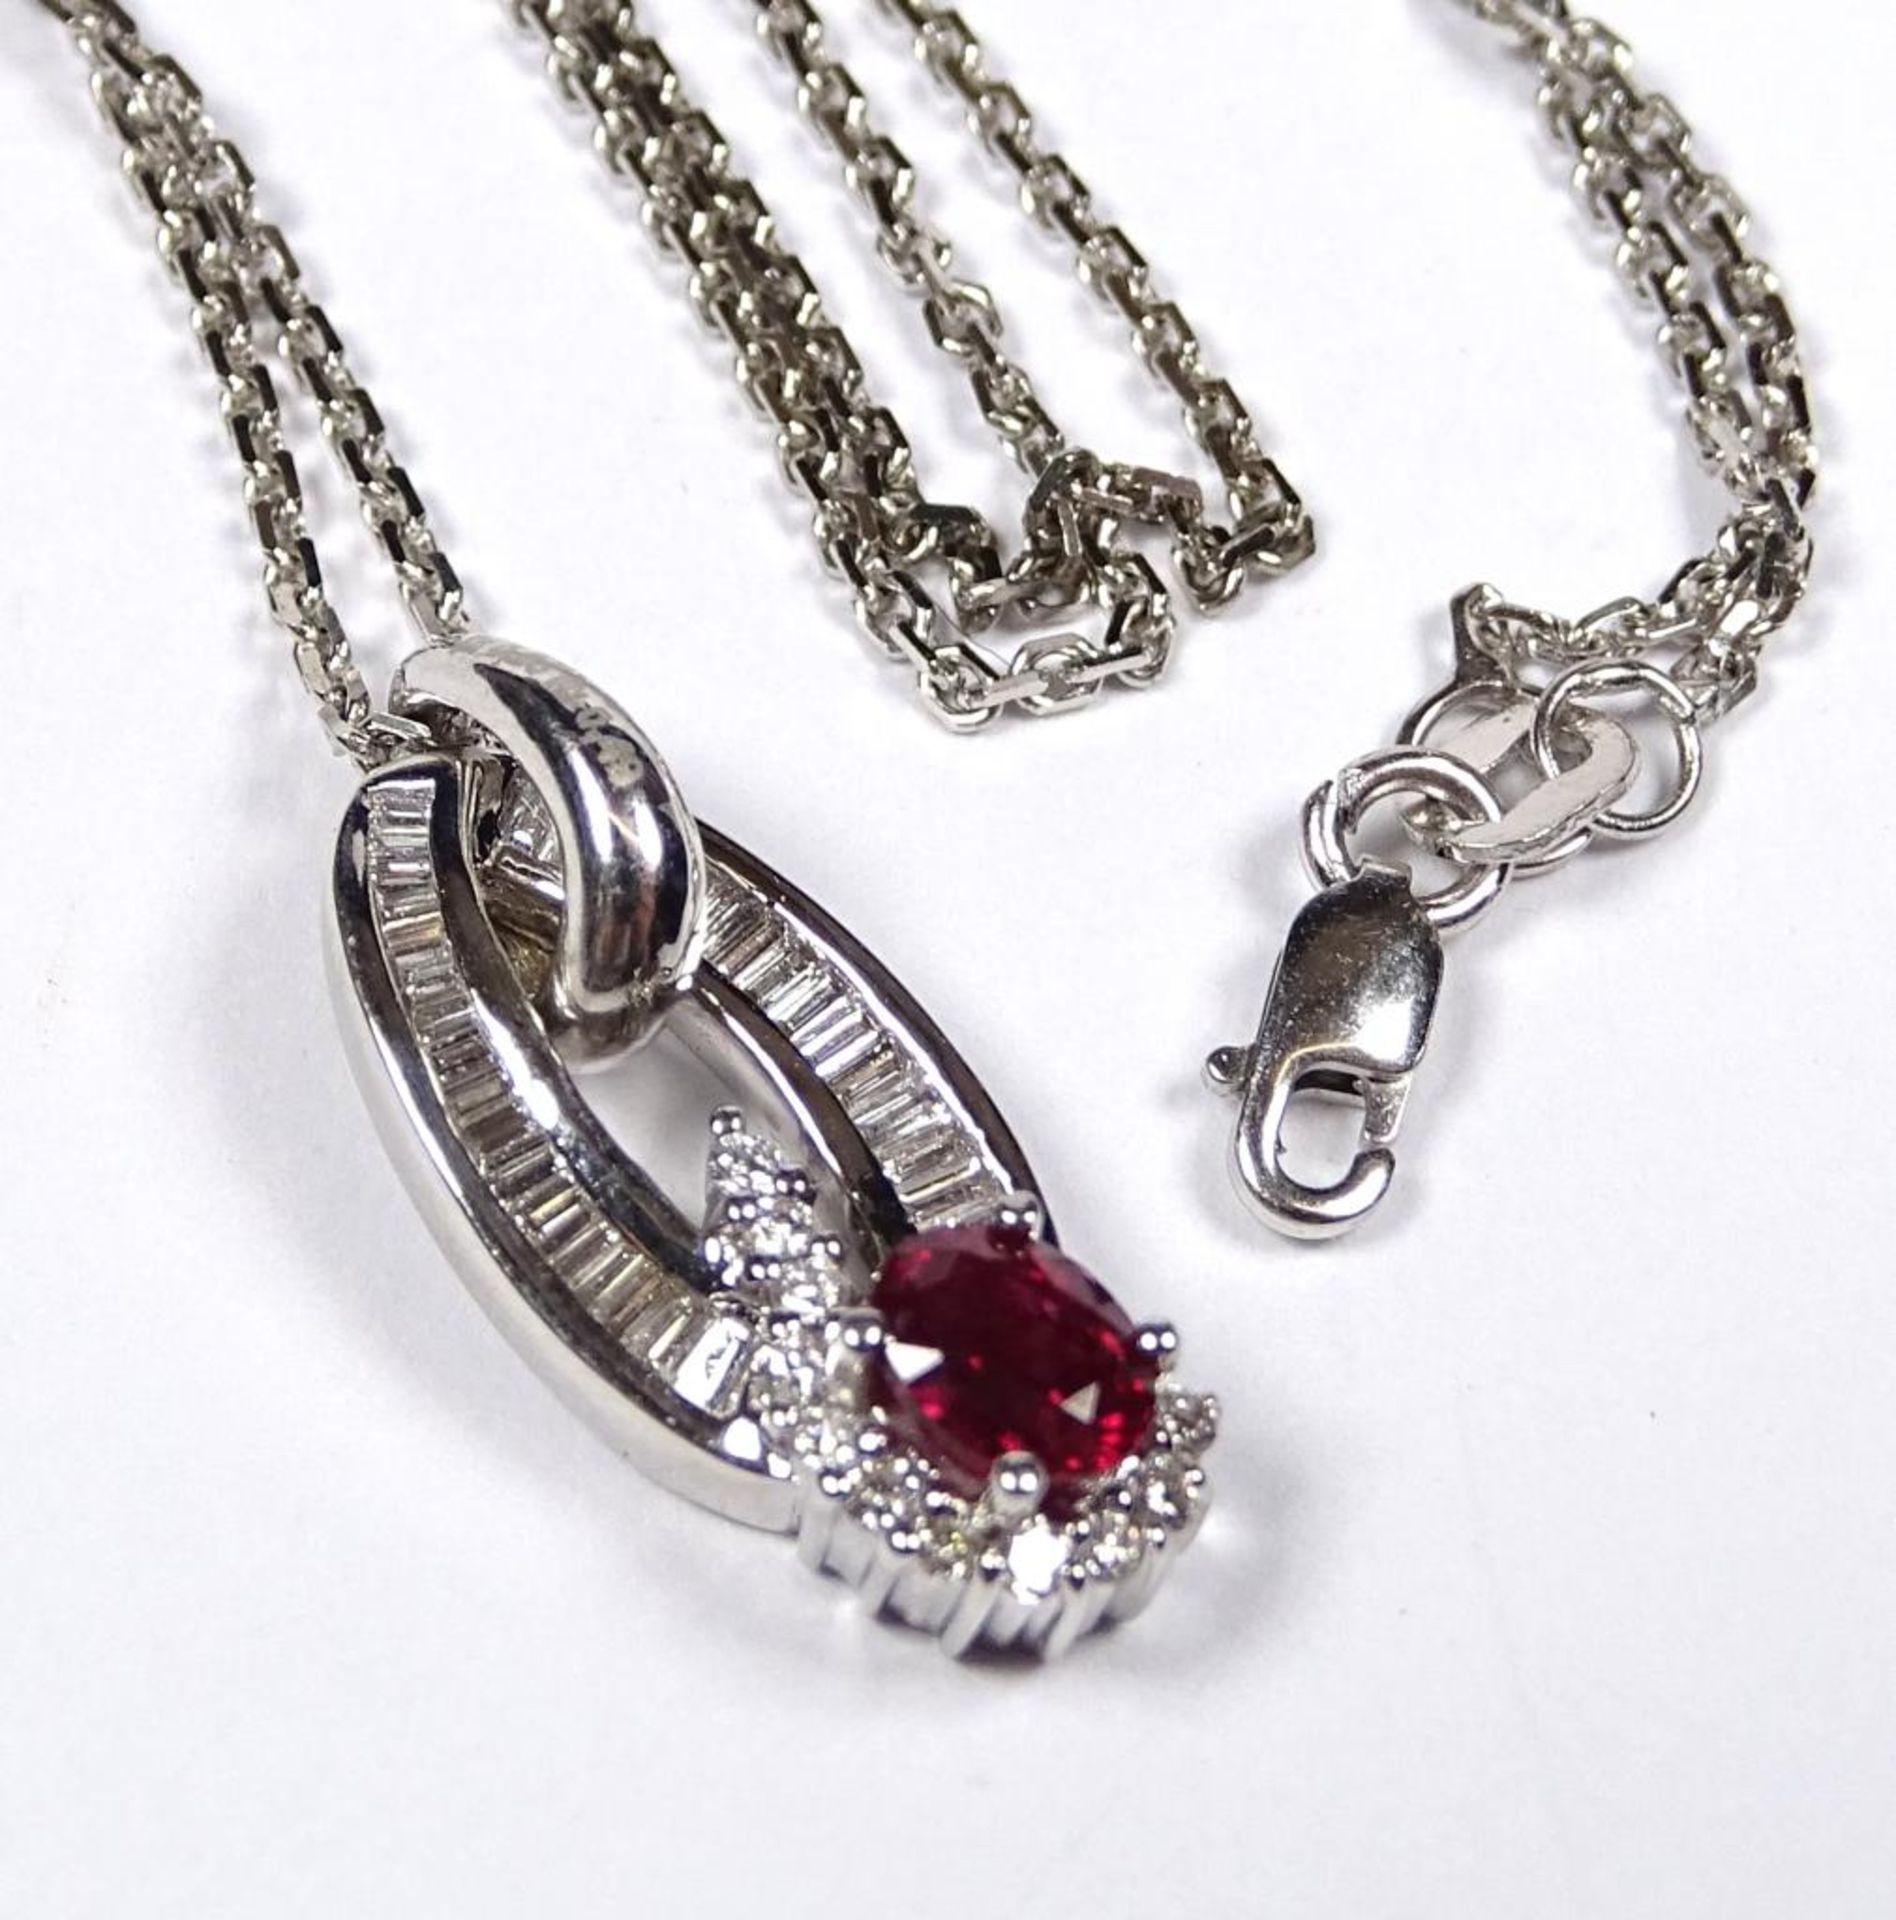 Halskette und Anhänger,Weissgold 750er,Rubin und Diamanten,Kette L-44cm,Anhänger 2,4cm,ges.Gew.6,4g - Bild 3 aus 4